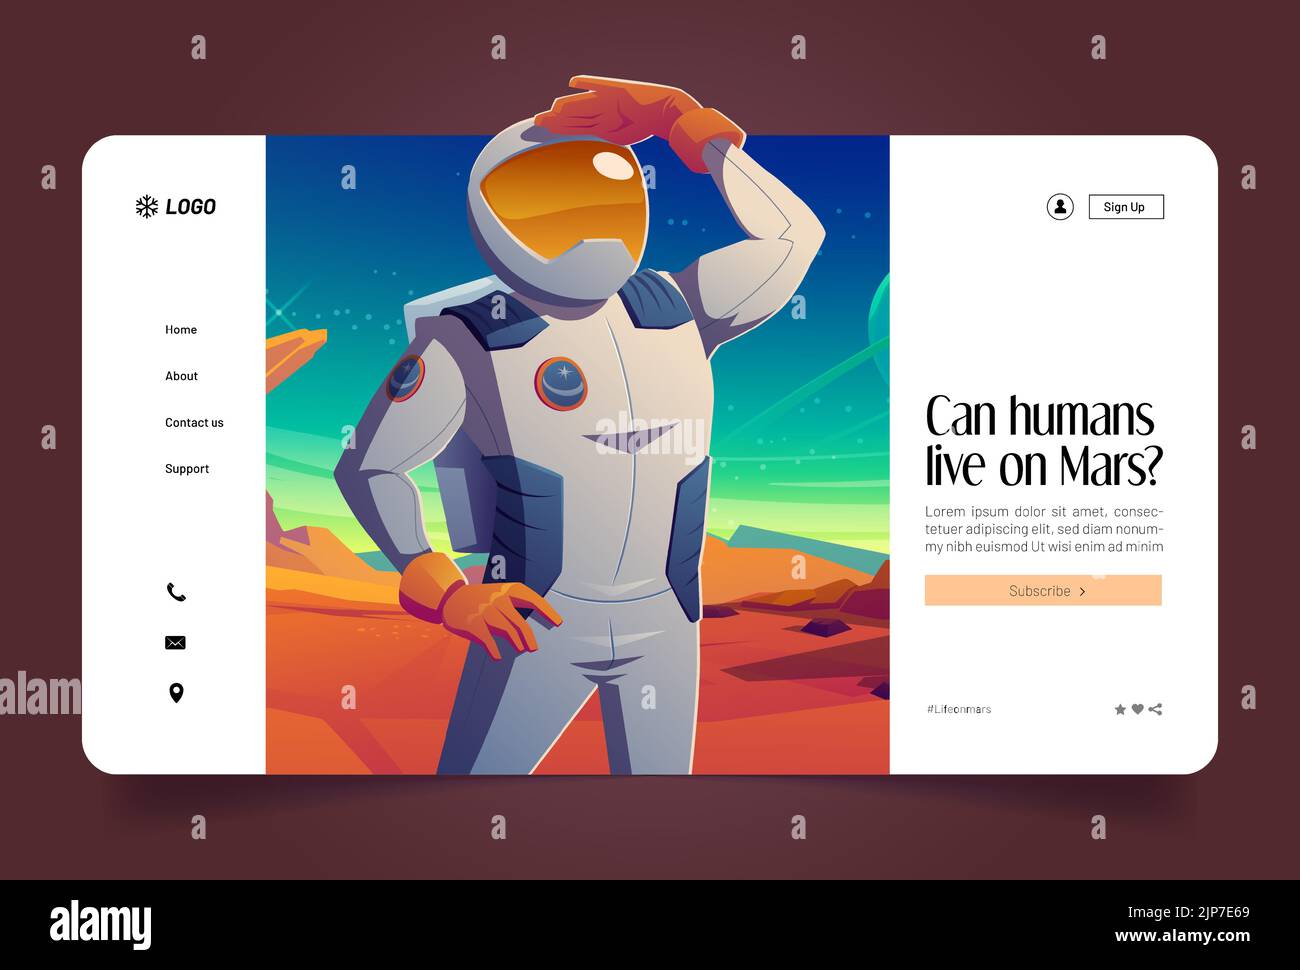 Mars colonizzazione, spazio esplorare missione cartoon landing page. Astronauta guardare lontano sul pianeta alieno. Cosmonaut in tuta sul paesaggio extraterrestre, gli esseri umani indagano sulla galassia. Banner Web vettoriale Illustrazione Vettoriale